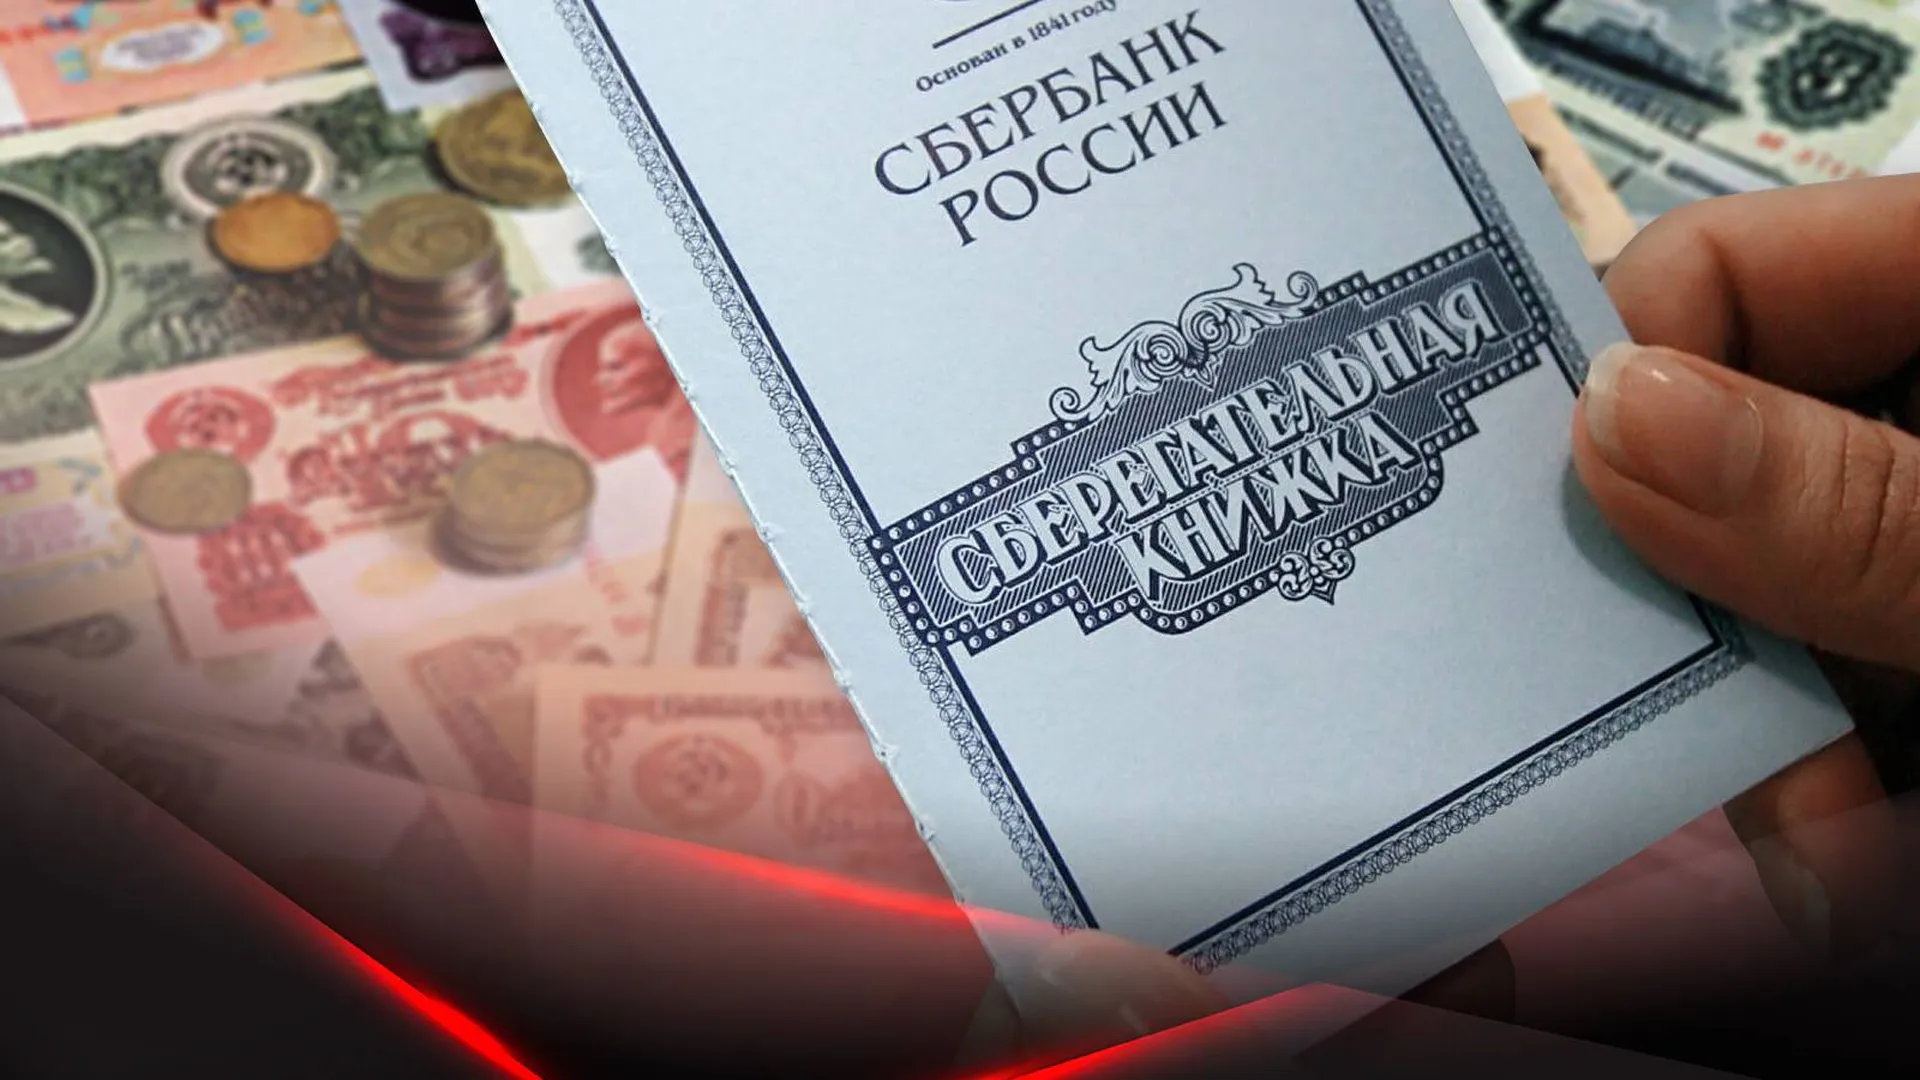 Сберкнижка СССР на фоне советских денег